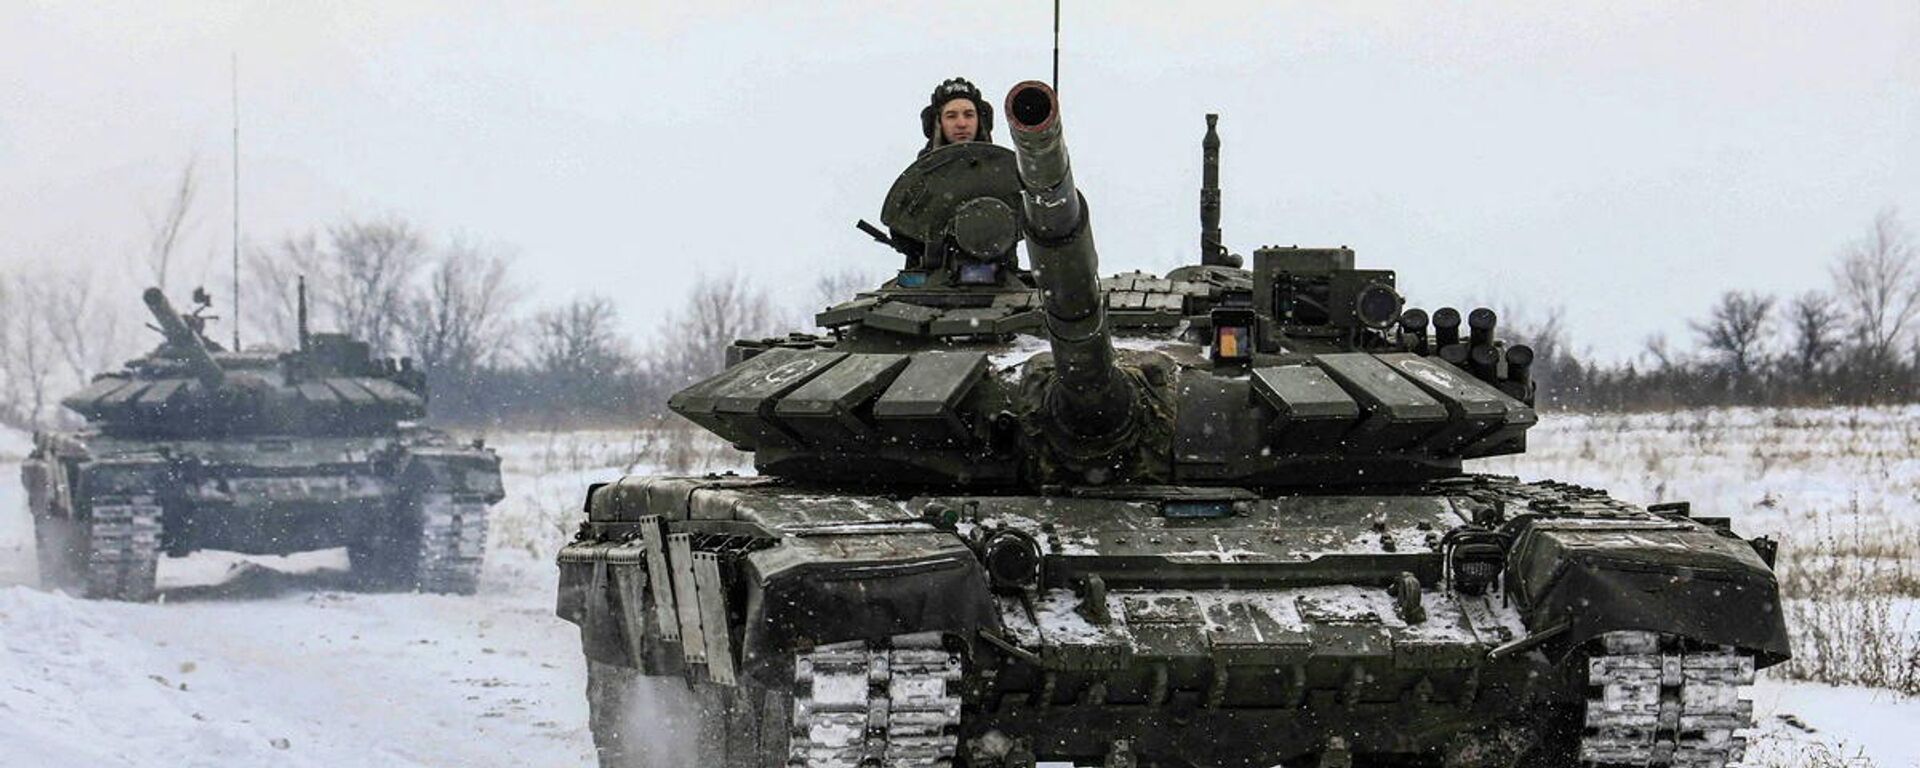 الجنود الروس يقودون الدبابات خلال التدريبات العسكرية في منطقة لينينغراد، روسيا، 14 فبراير 2022. - سبوتنيك عربي, 1920, 18.02.2022